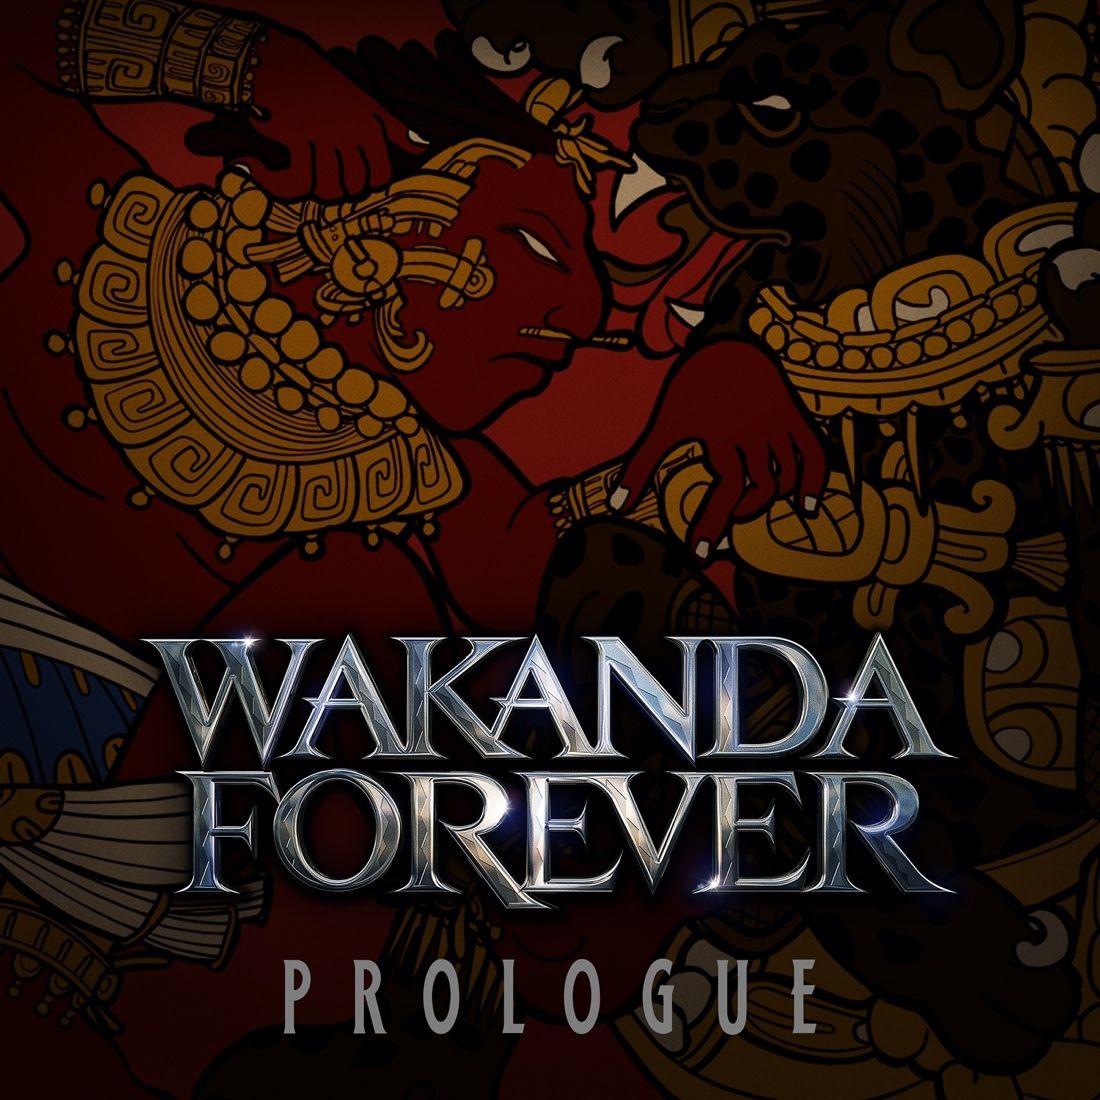 Wakanda Forever prologue album art